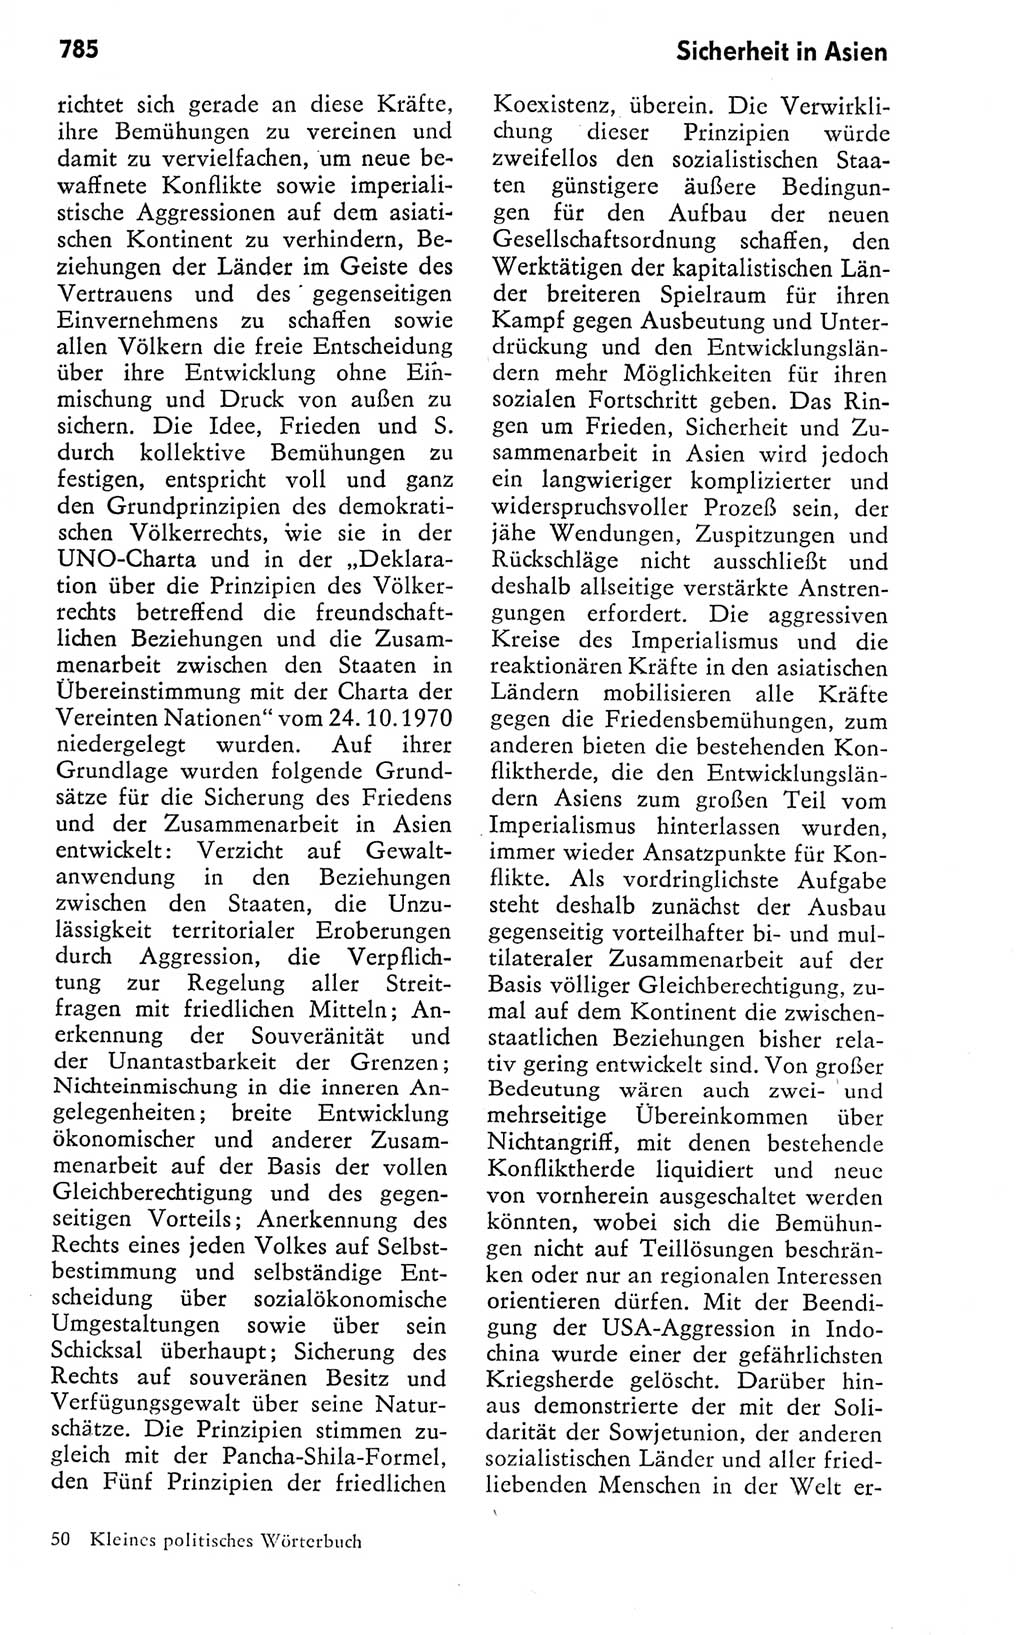 Kleines politisches Wörterbuch [Deutsche Demokratische Republik (DDR)] 1978, Seite 785 (Kl. pol. Wb. DDR 1978, S. 785)